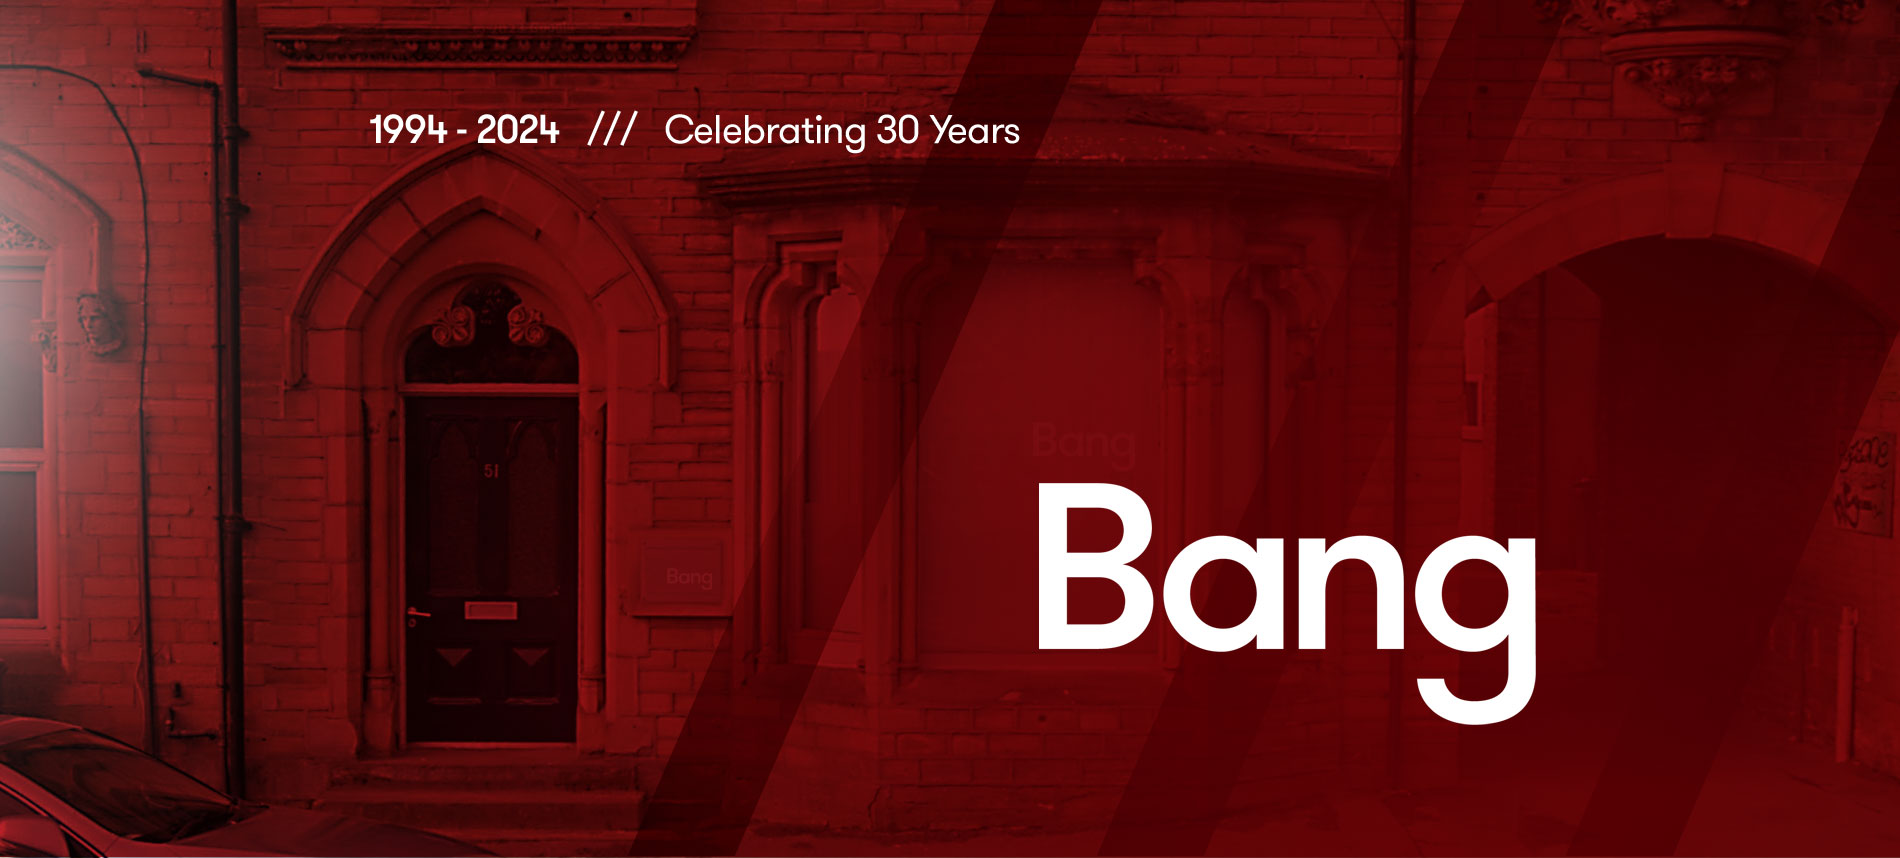 Bang Design Celebrating 30 years